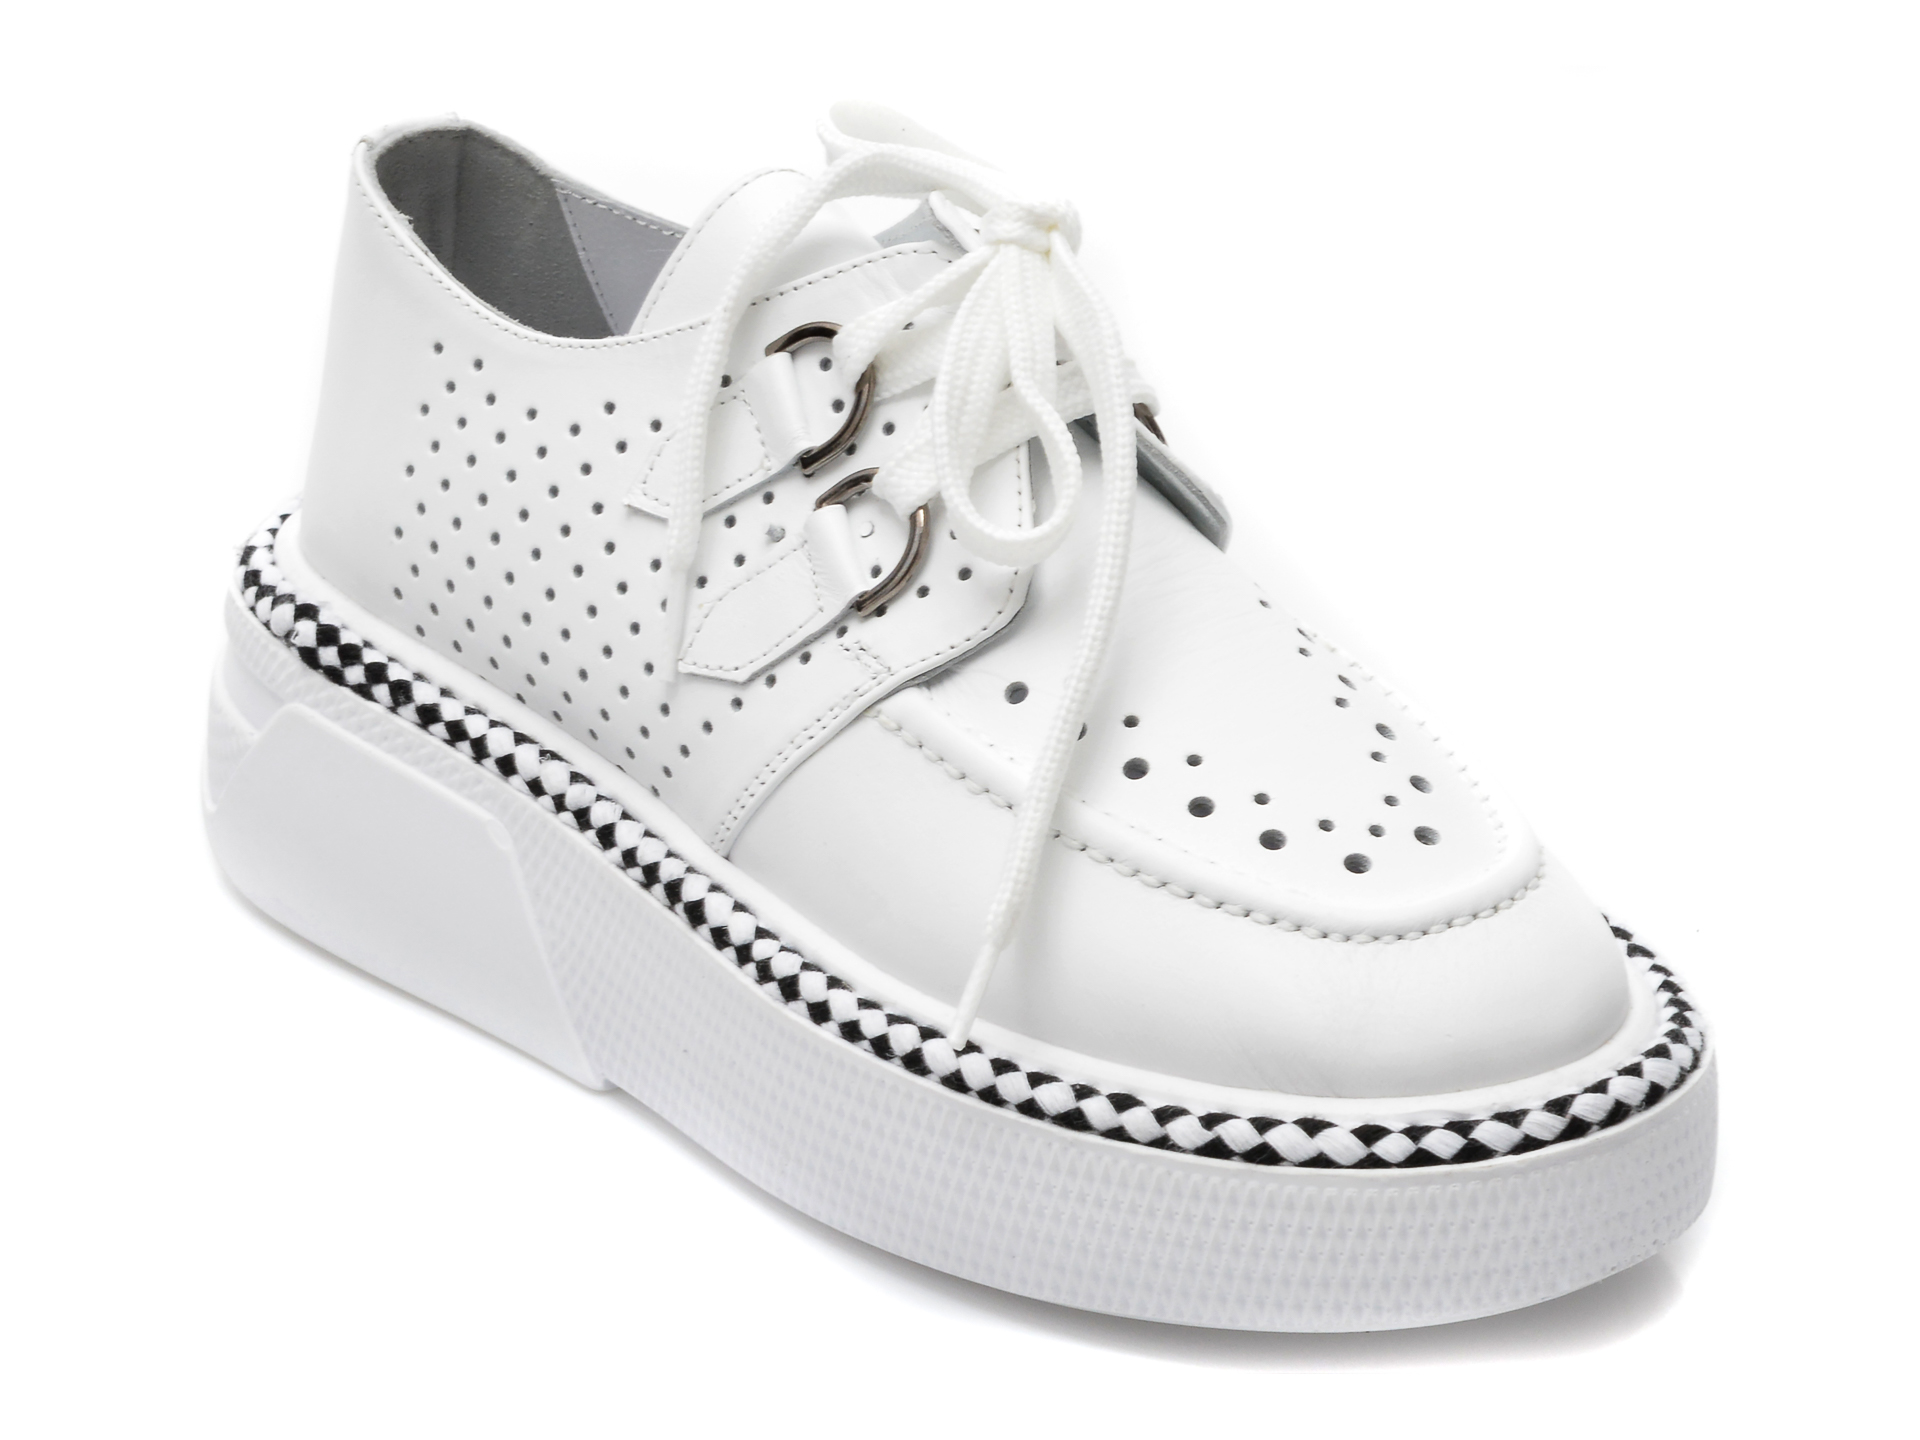 Pantofi CASSIDO albi, 123, din piele naturala imagine reduceri black friday 2021 CASSIDO